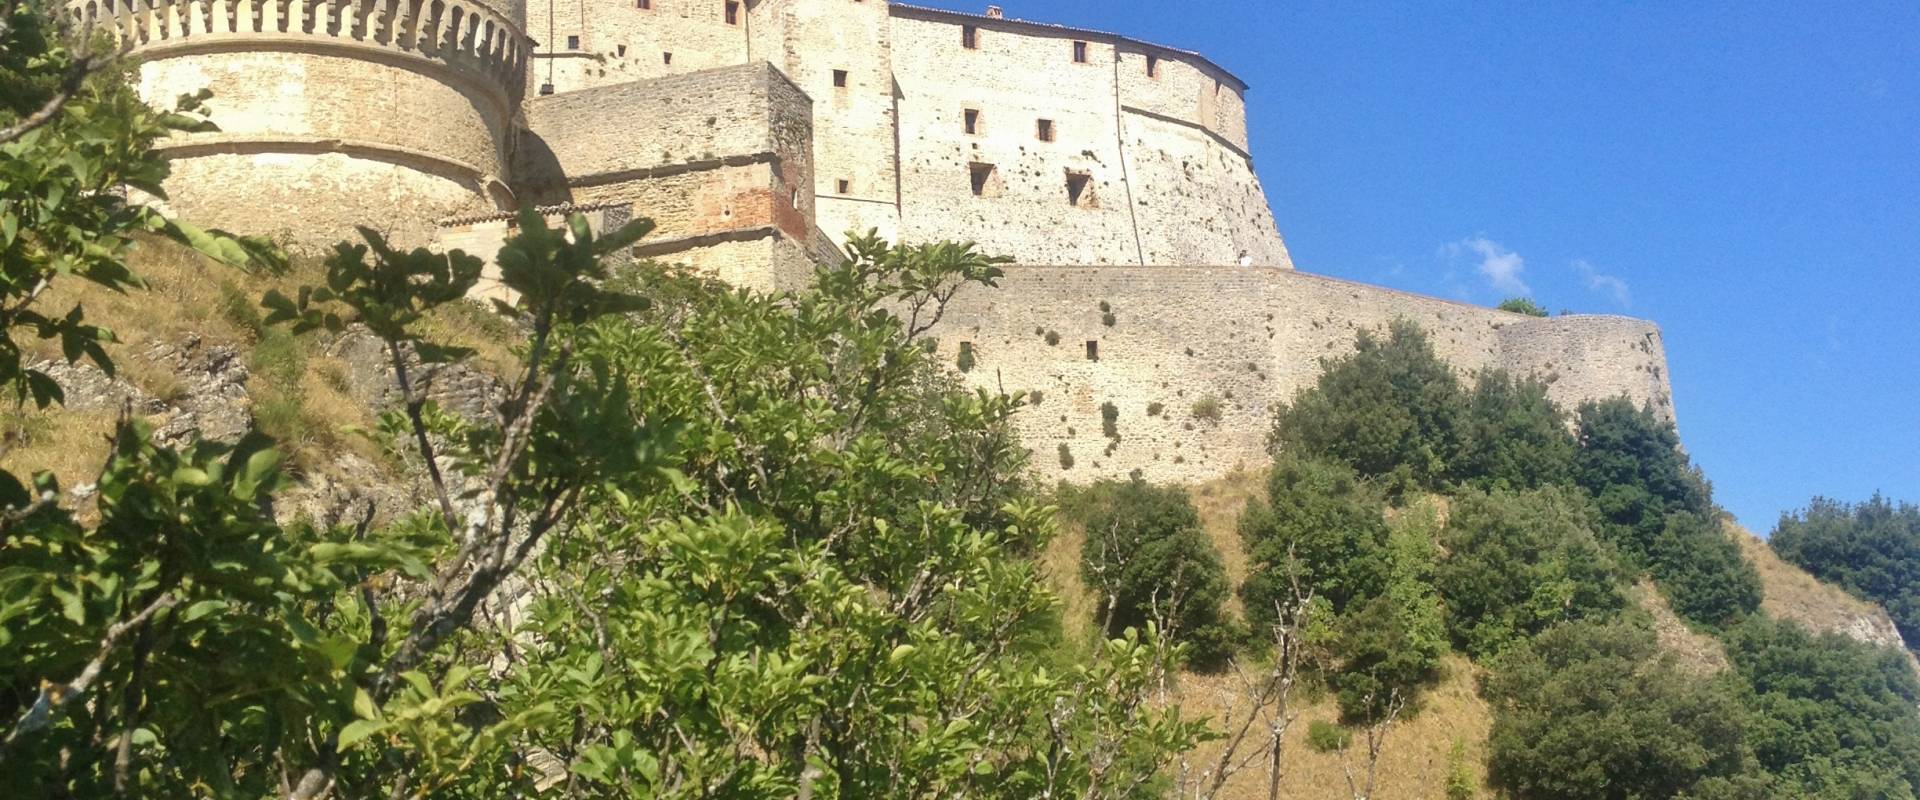 Fortezza di San Leo Vista dal basso foto di Effepi9